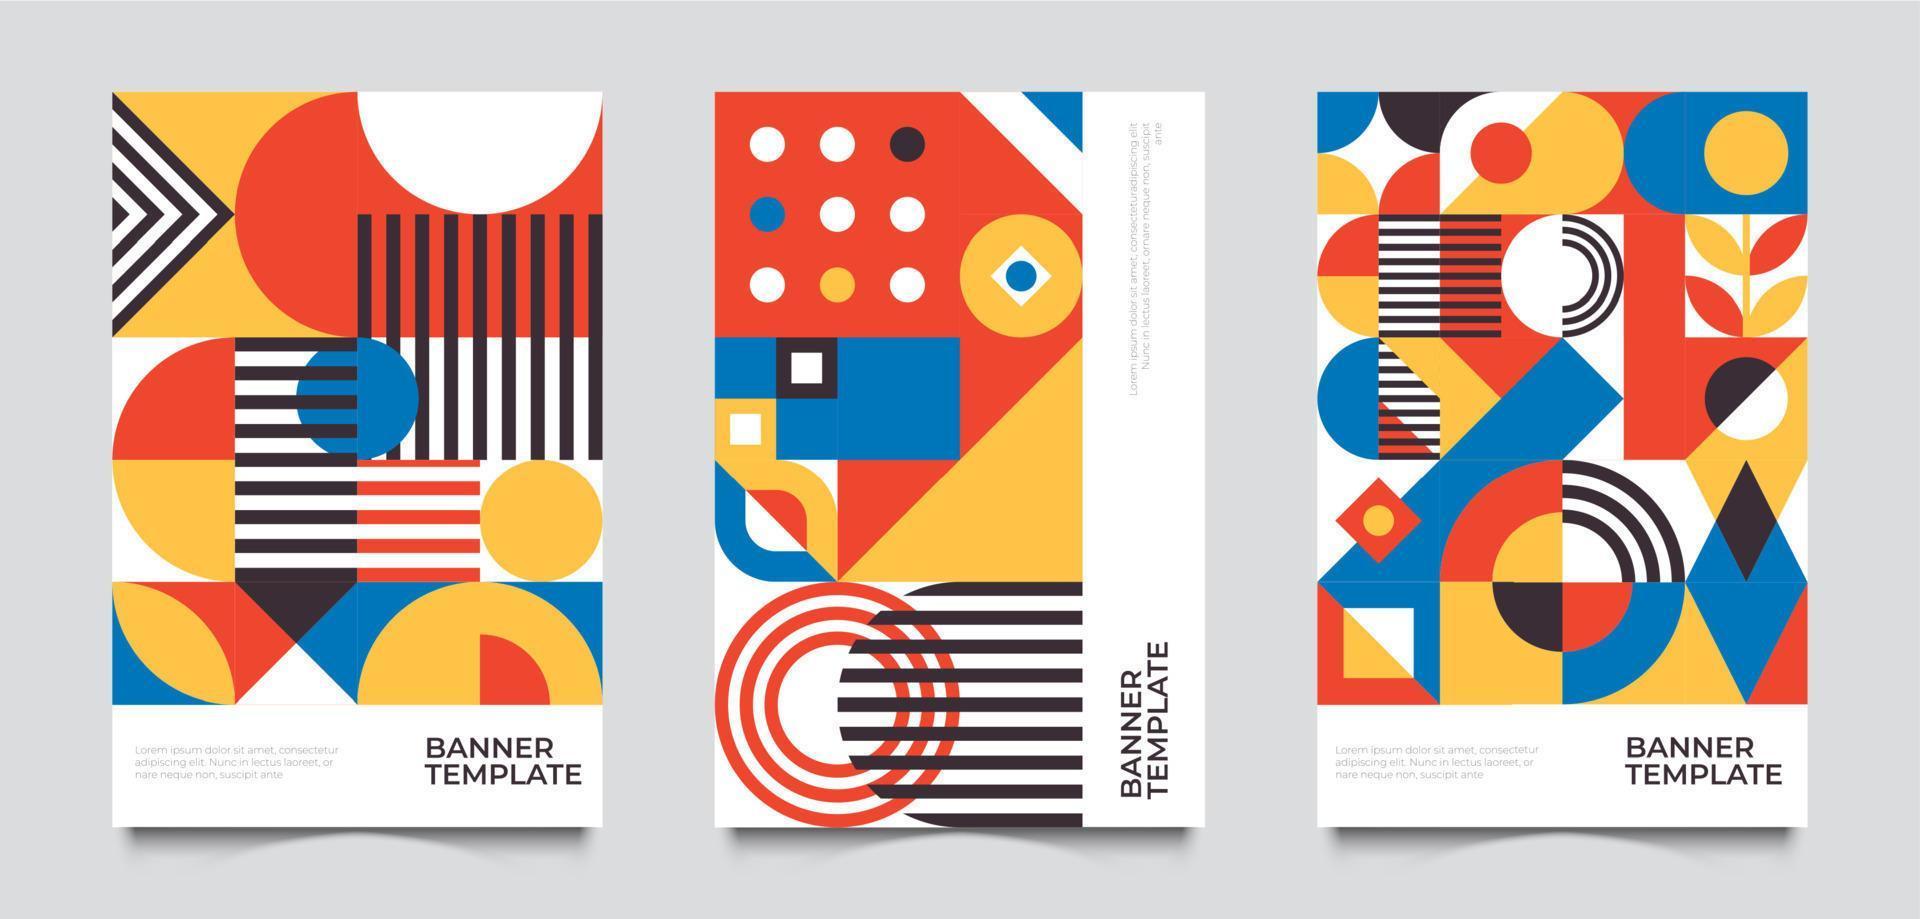 bauhaus geïnspireerd posters met plein figuren en tekst. minimaal modern abstract brochures. abstract retro posters met eenvoudig figuren Sjablonen vector